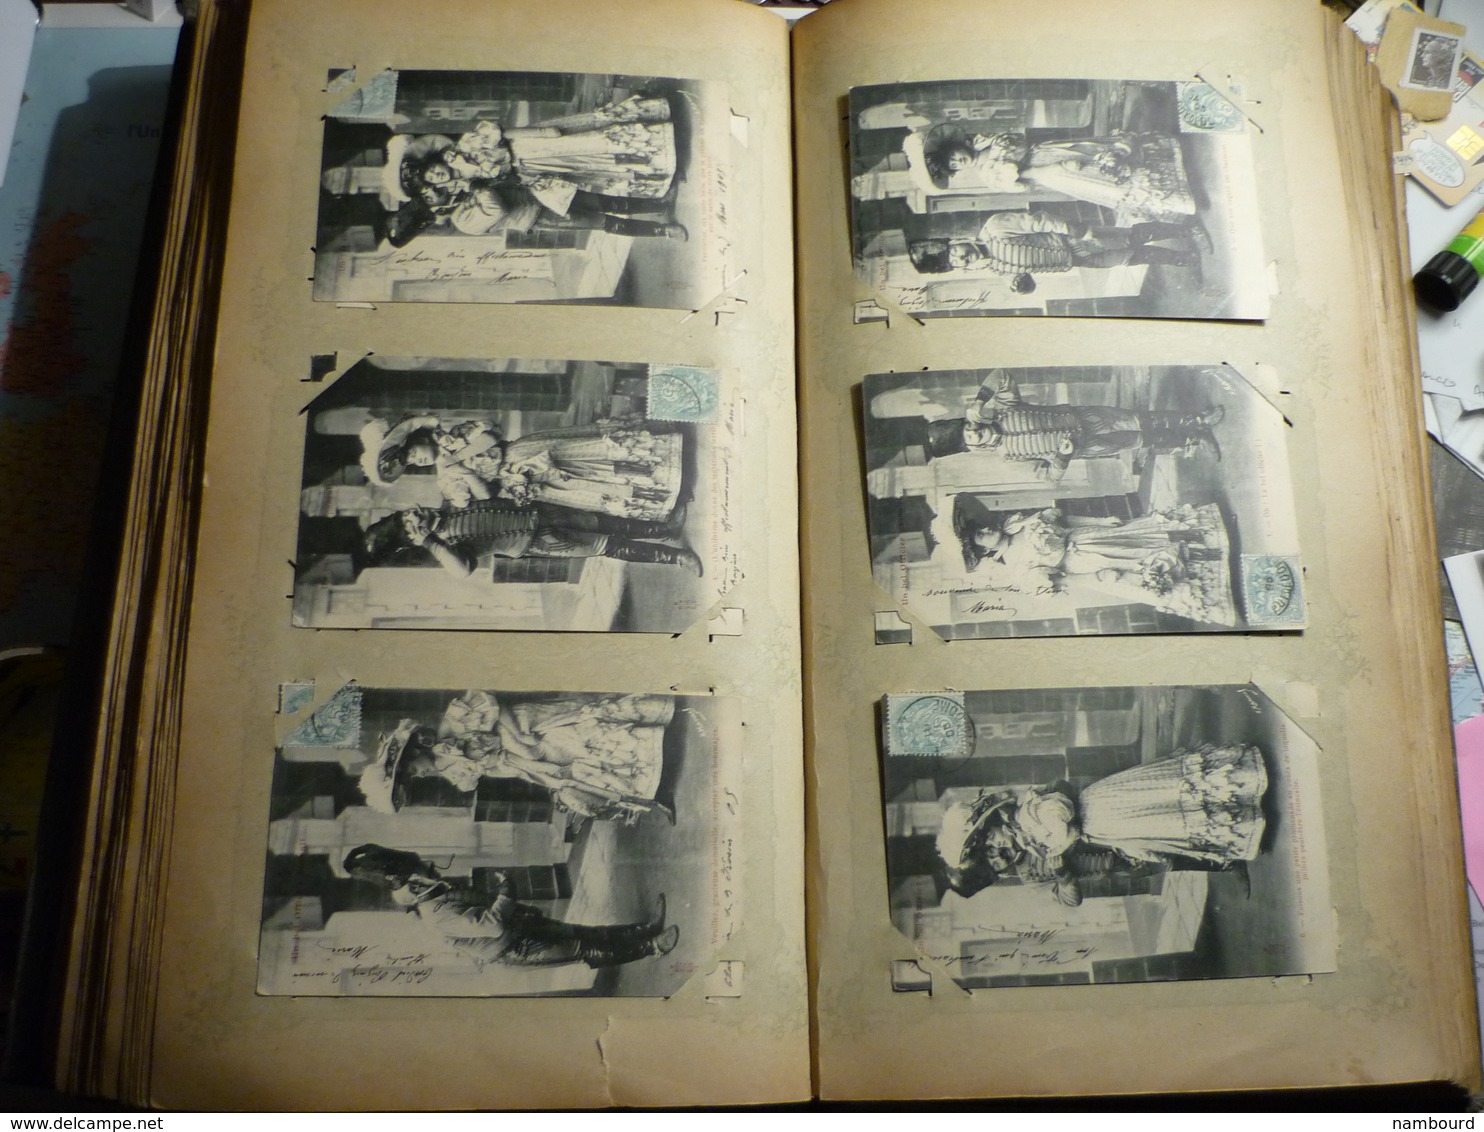 Lot de 696 cartes fantaisie Bergeret dans un gros album ancien de 232 pages